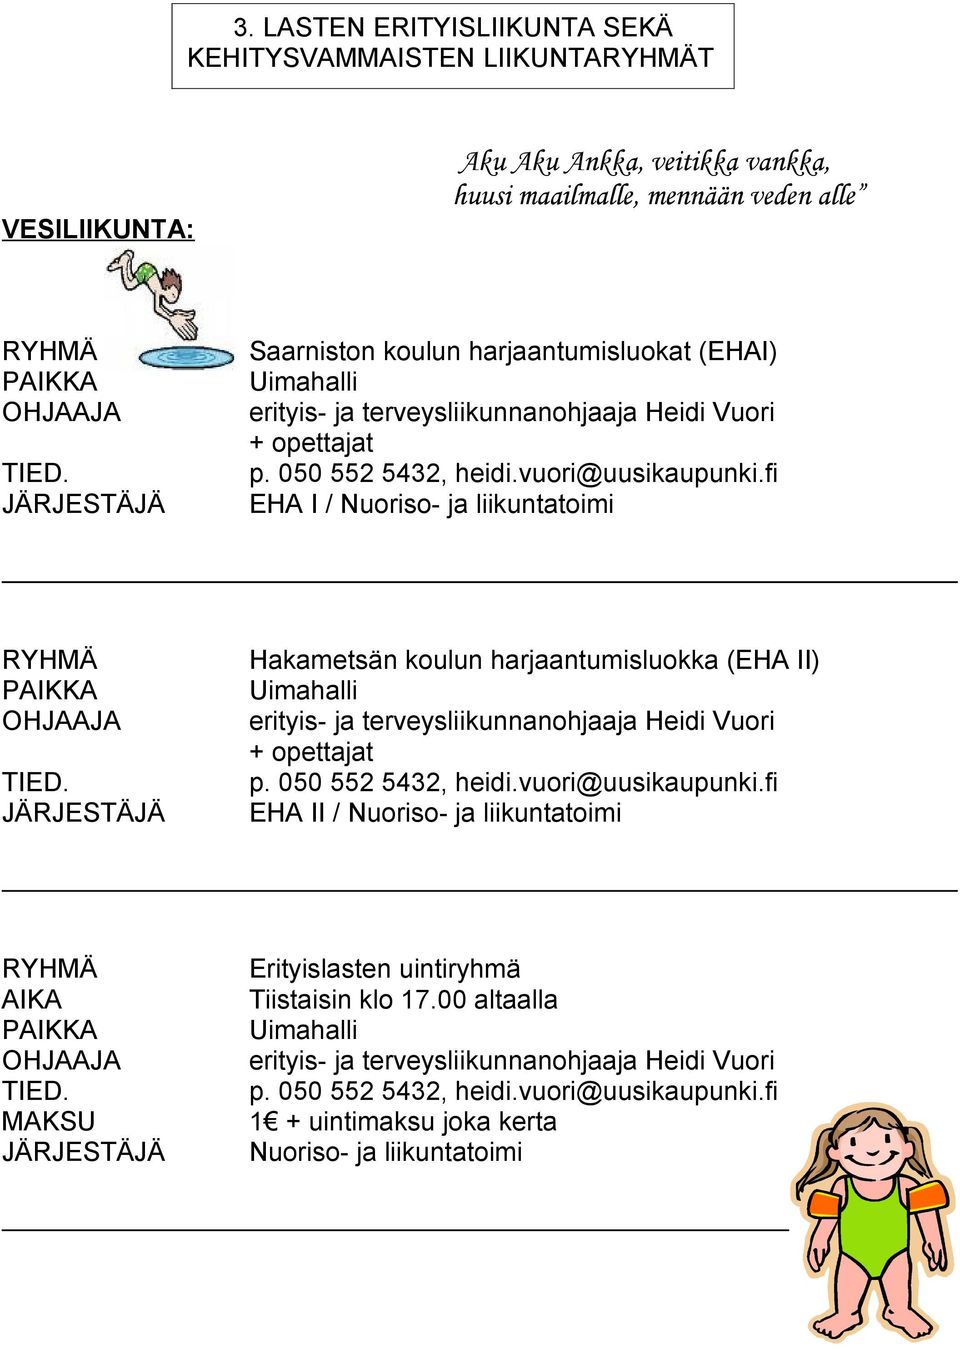 Hakametsän koulun harjaantumisluokka (EHA II) Uimahalli erityis- ja terveysliikunnanohjaaja Heidi Vuori + opettajat EHA II / Nuoriso- ja liikuntatoimi AIKA OHJAAJA